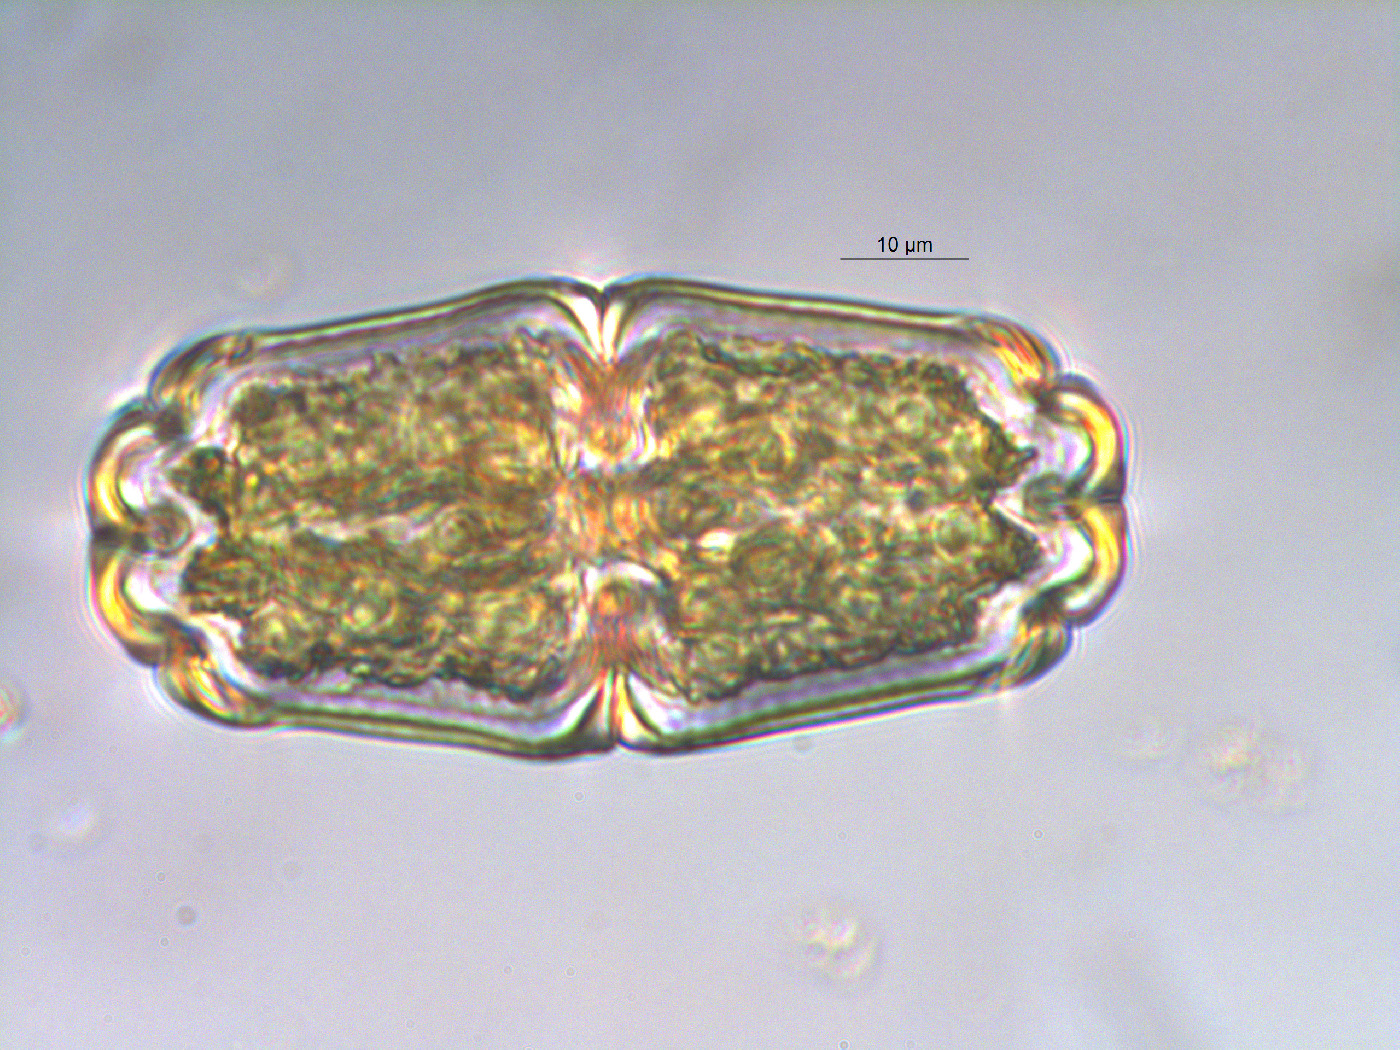 Euastrum crassum var. microcephalum image